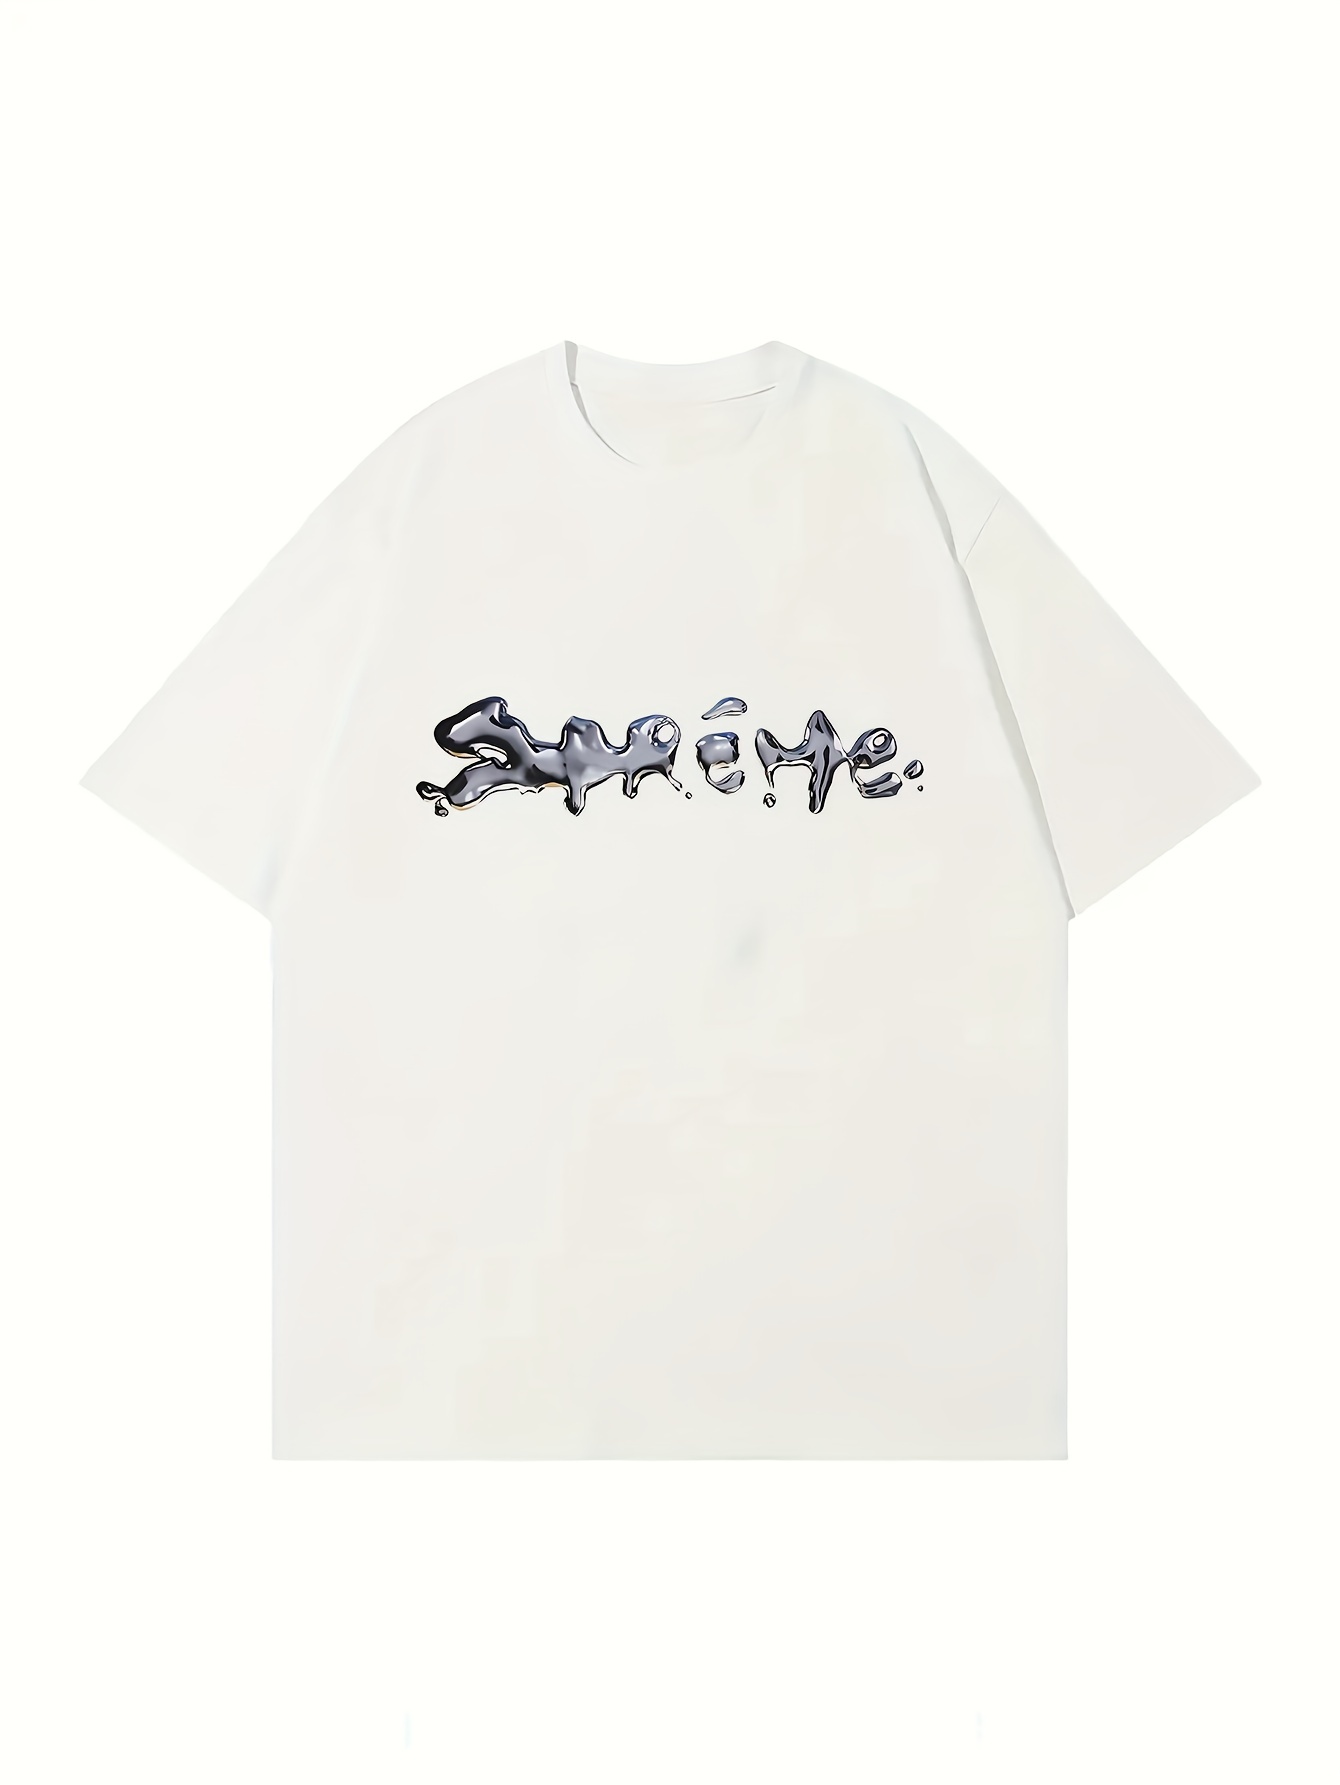 Dennis Rodman Shirt - Astroworld Travis Scott Jordan Jersey Unisex T-shirt  Crewneck